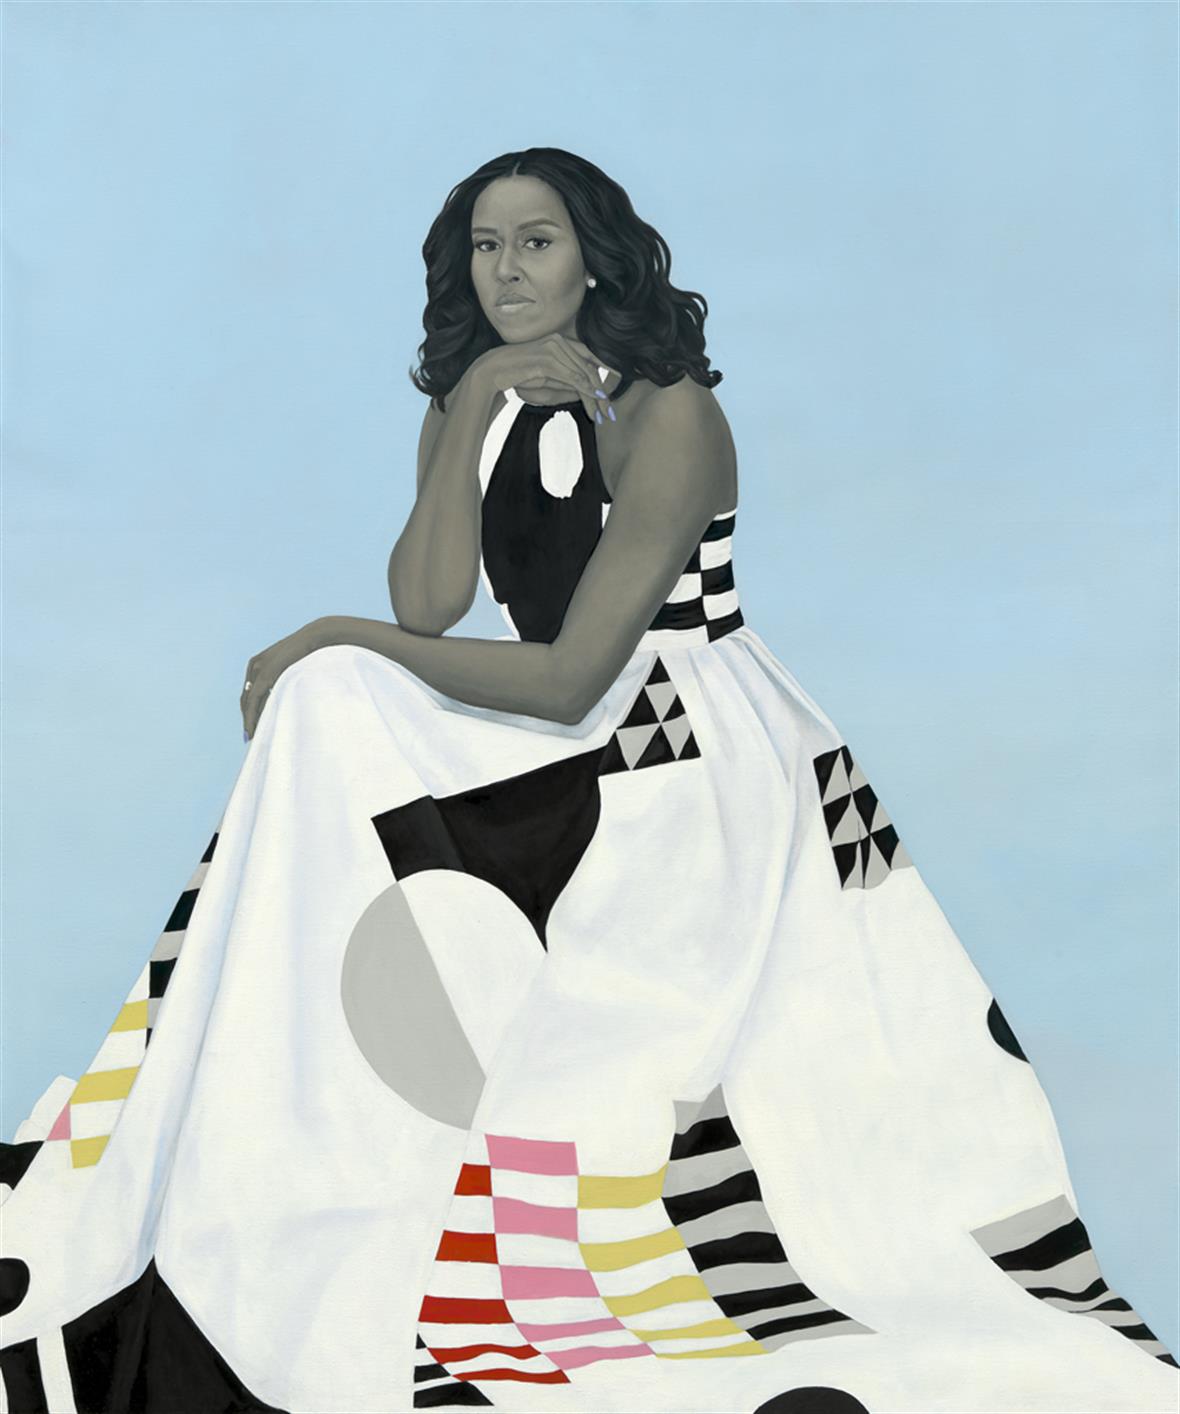 Amy Sherald's portrait of Michelle Obama